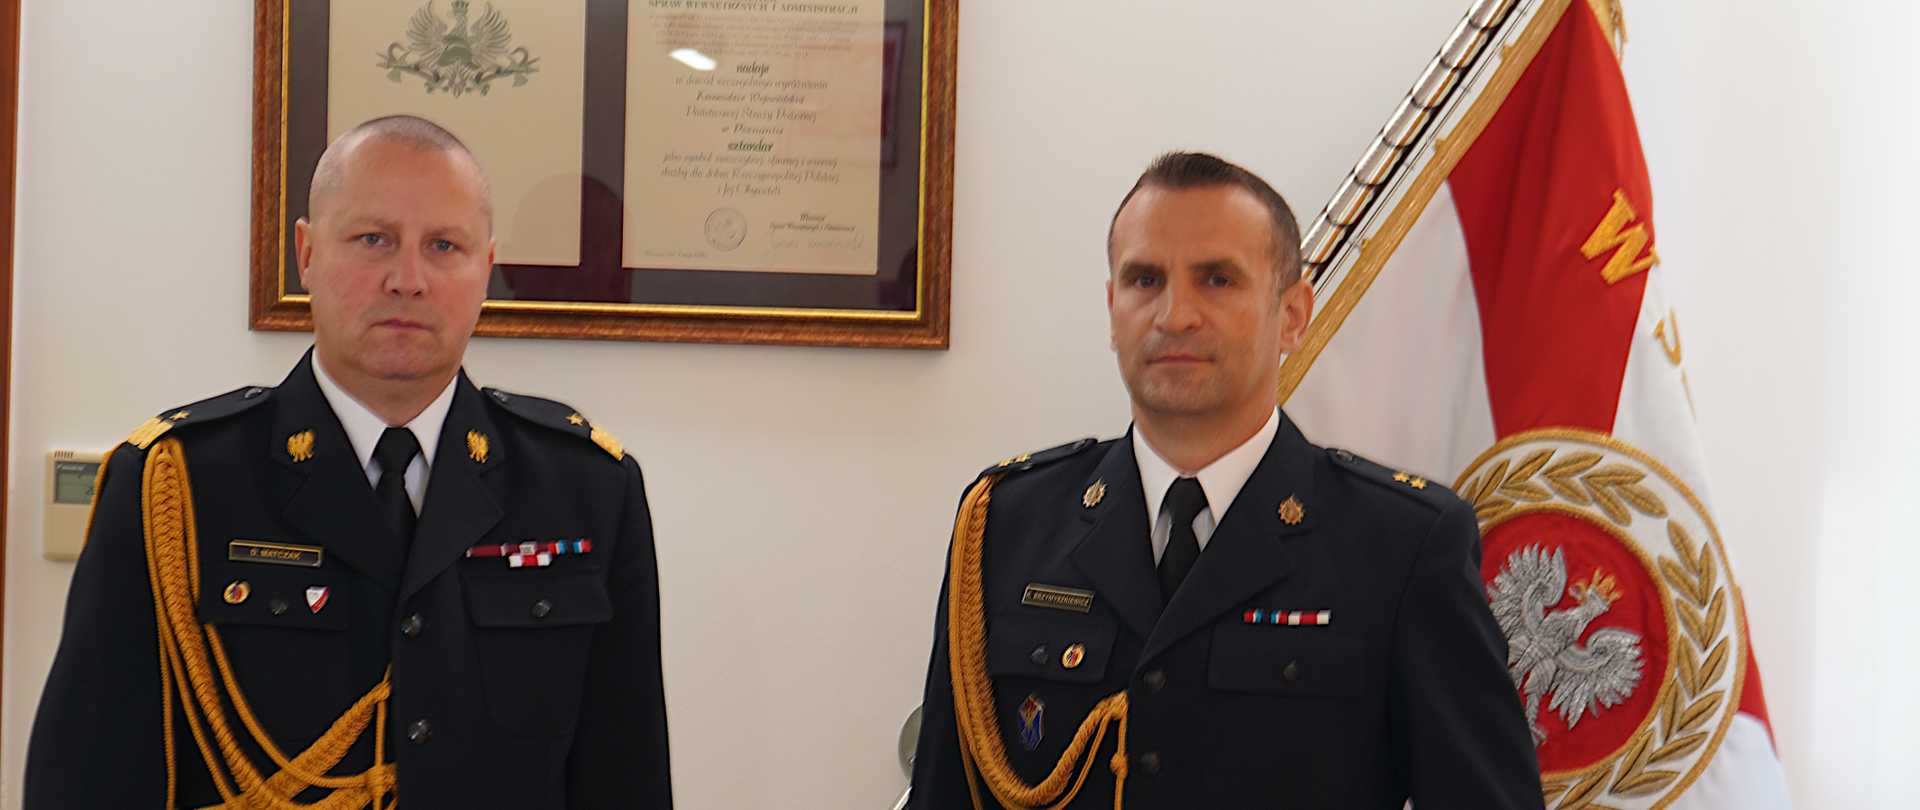 dwóch mężczyzn stoi obok siebie w ciemnych mundurach ze złotym sznurem i białych koszulach z czarnym krawatem. W tle sztandar